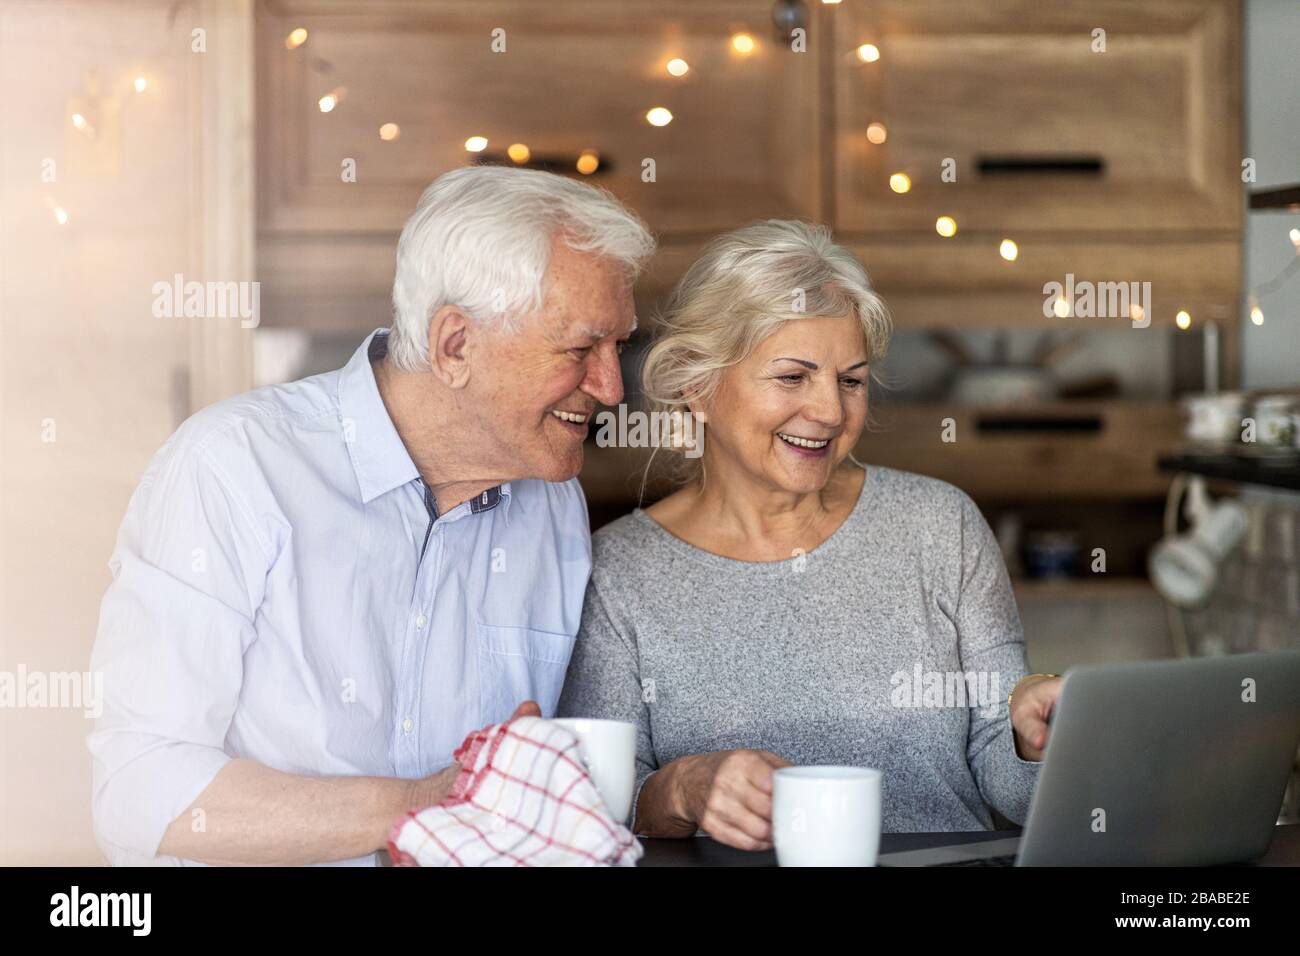 Senior couple using laptop in their kitchen Stock Photo